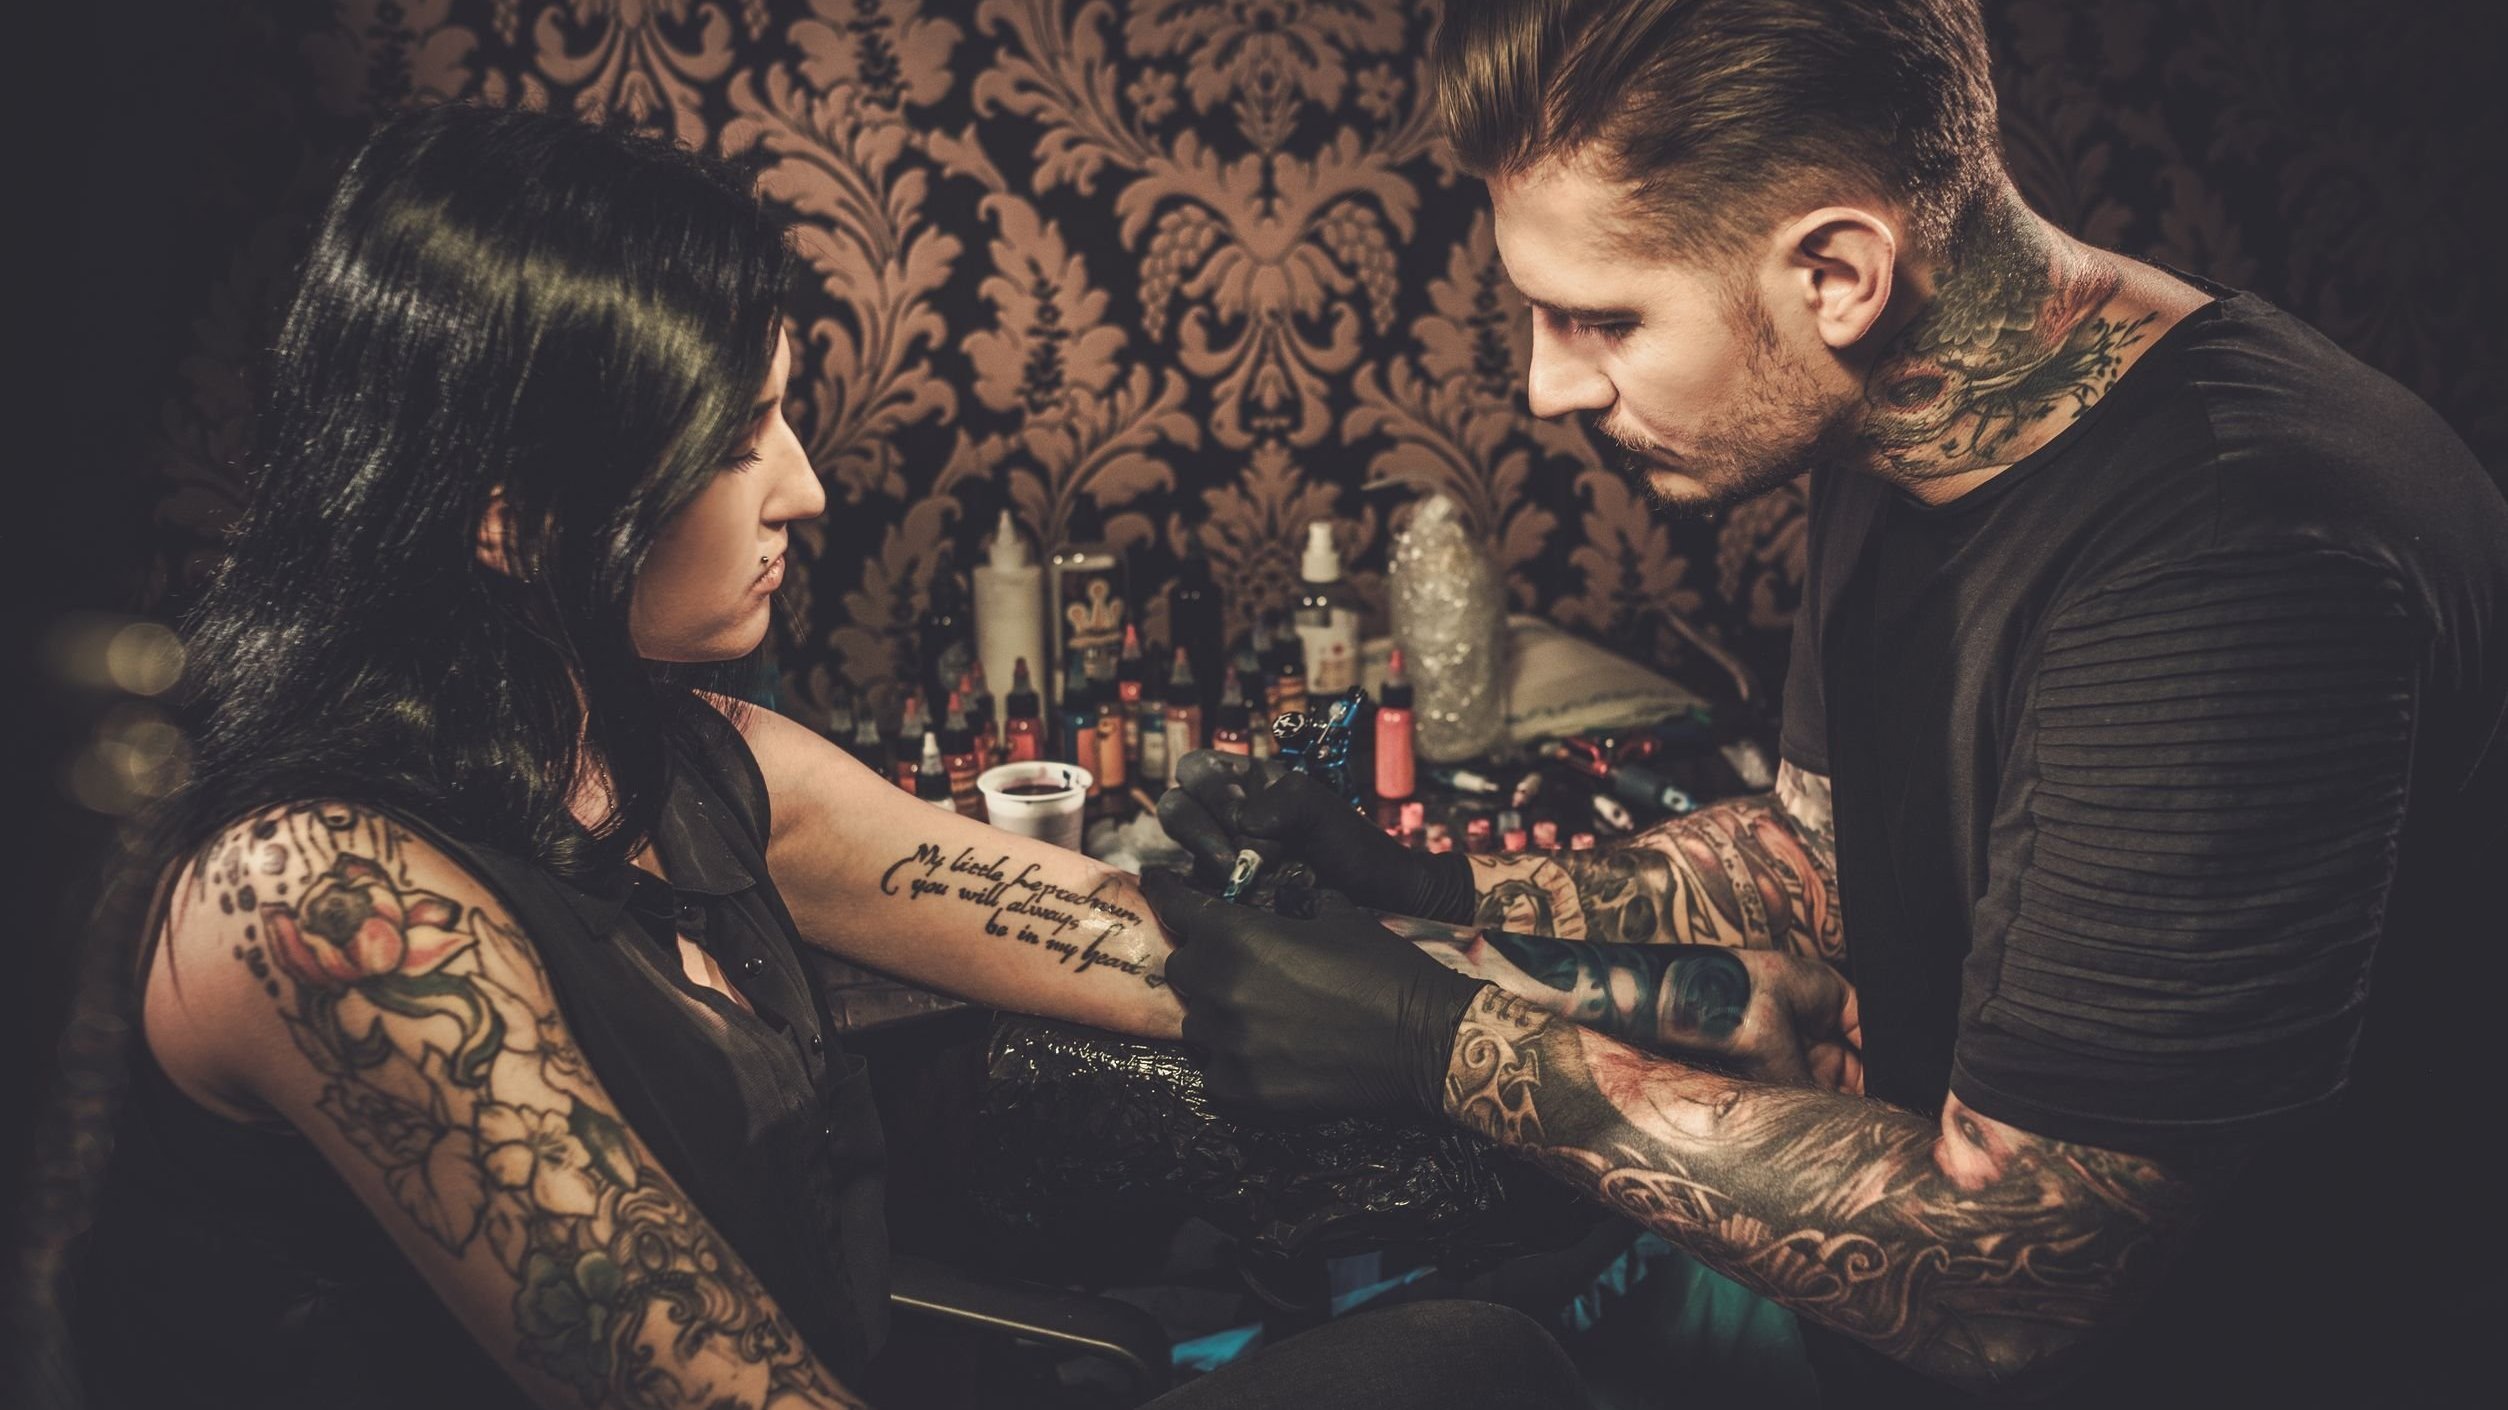 Homem e mulher cobertos por tatuagens. O homem está tatuando o braço esquerdo da mulher.